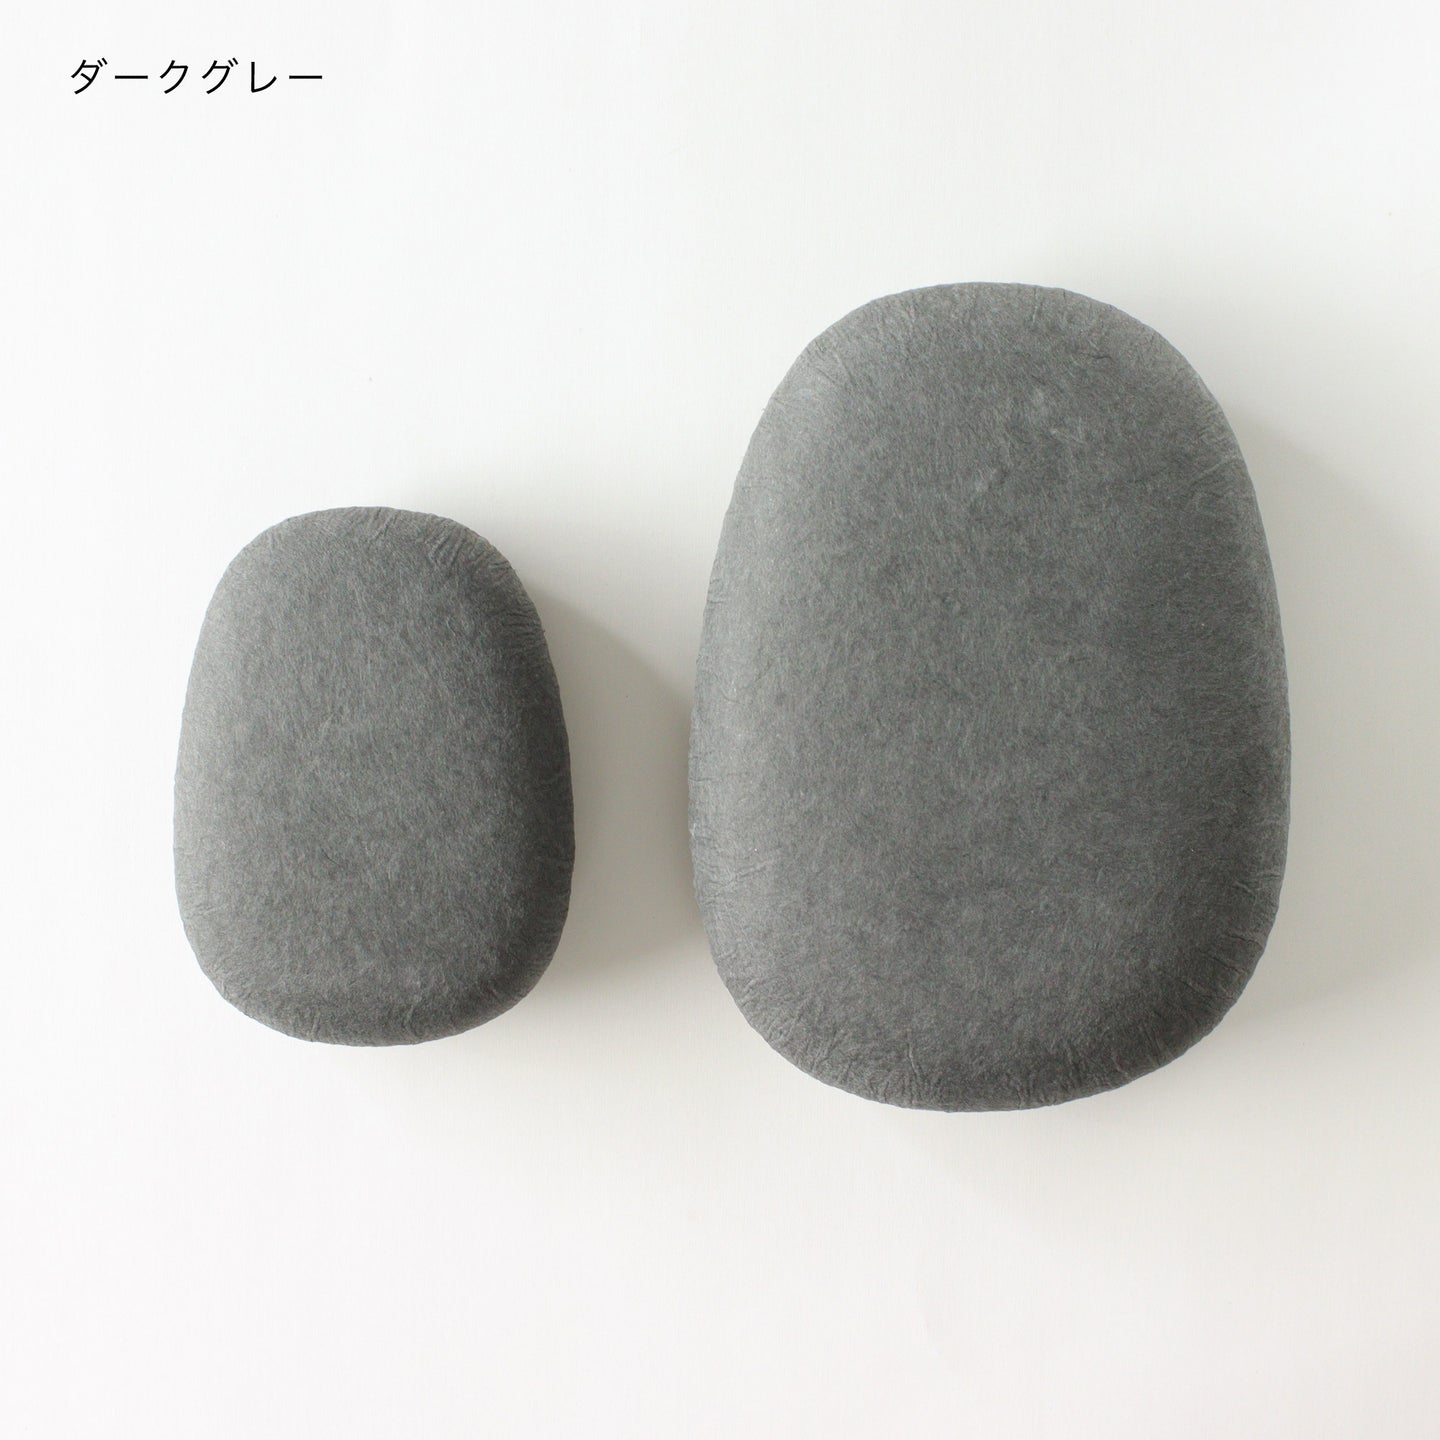 harukami / cobble